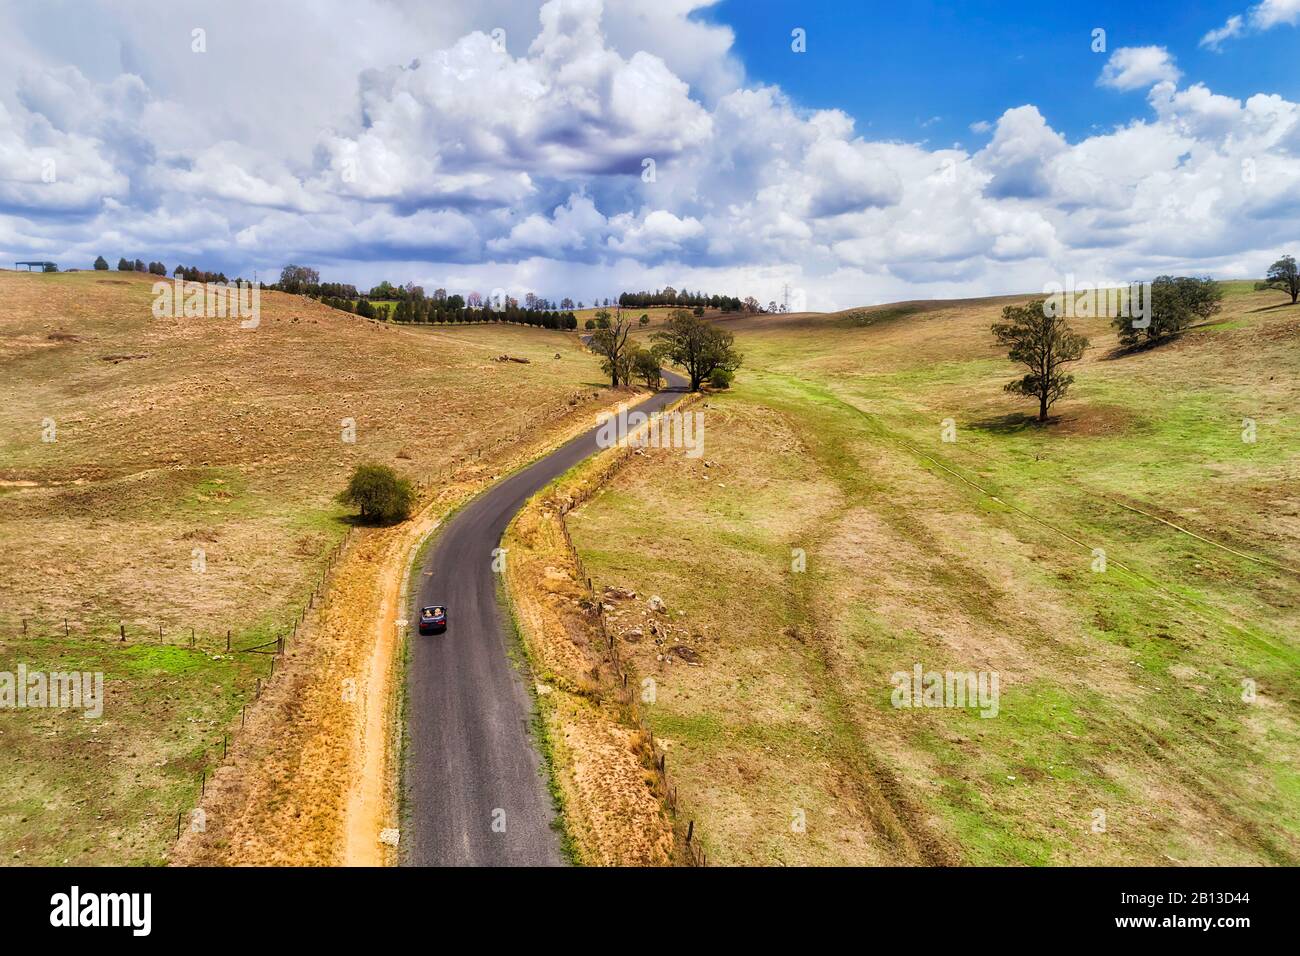 Trockene Landwirtschaft Rinderfarmen in den Blue Mountains in australien. Abgelegene einspurige Straße mit einem einsamen modernen, konvernierbaren Auto, das bergauf fährt. Stockfoto